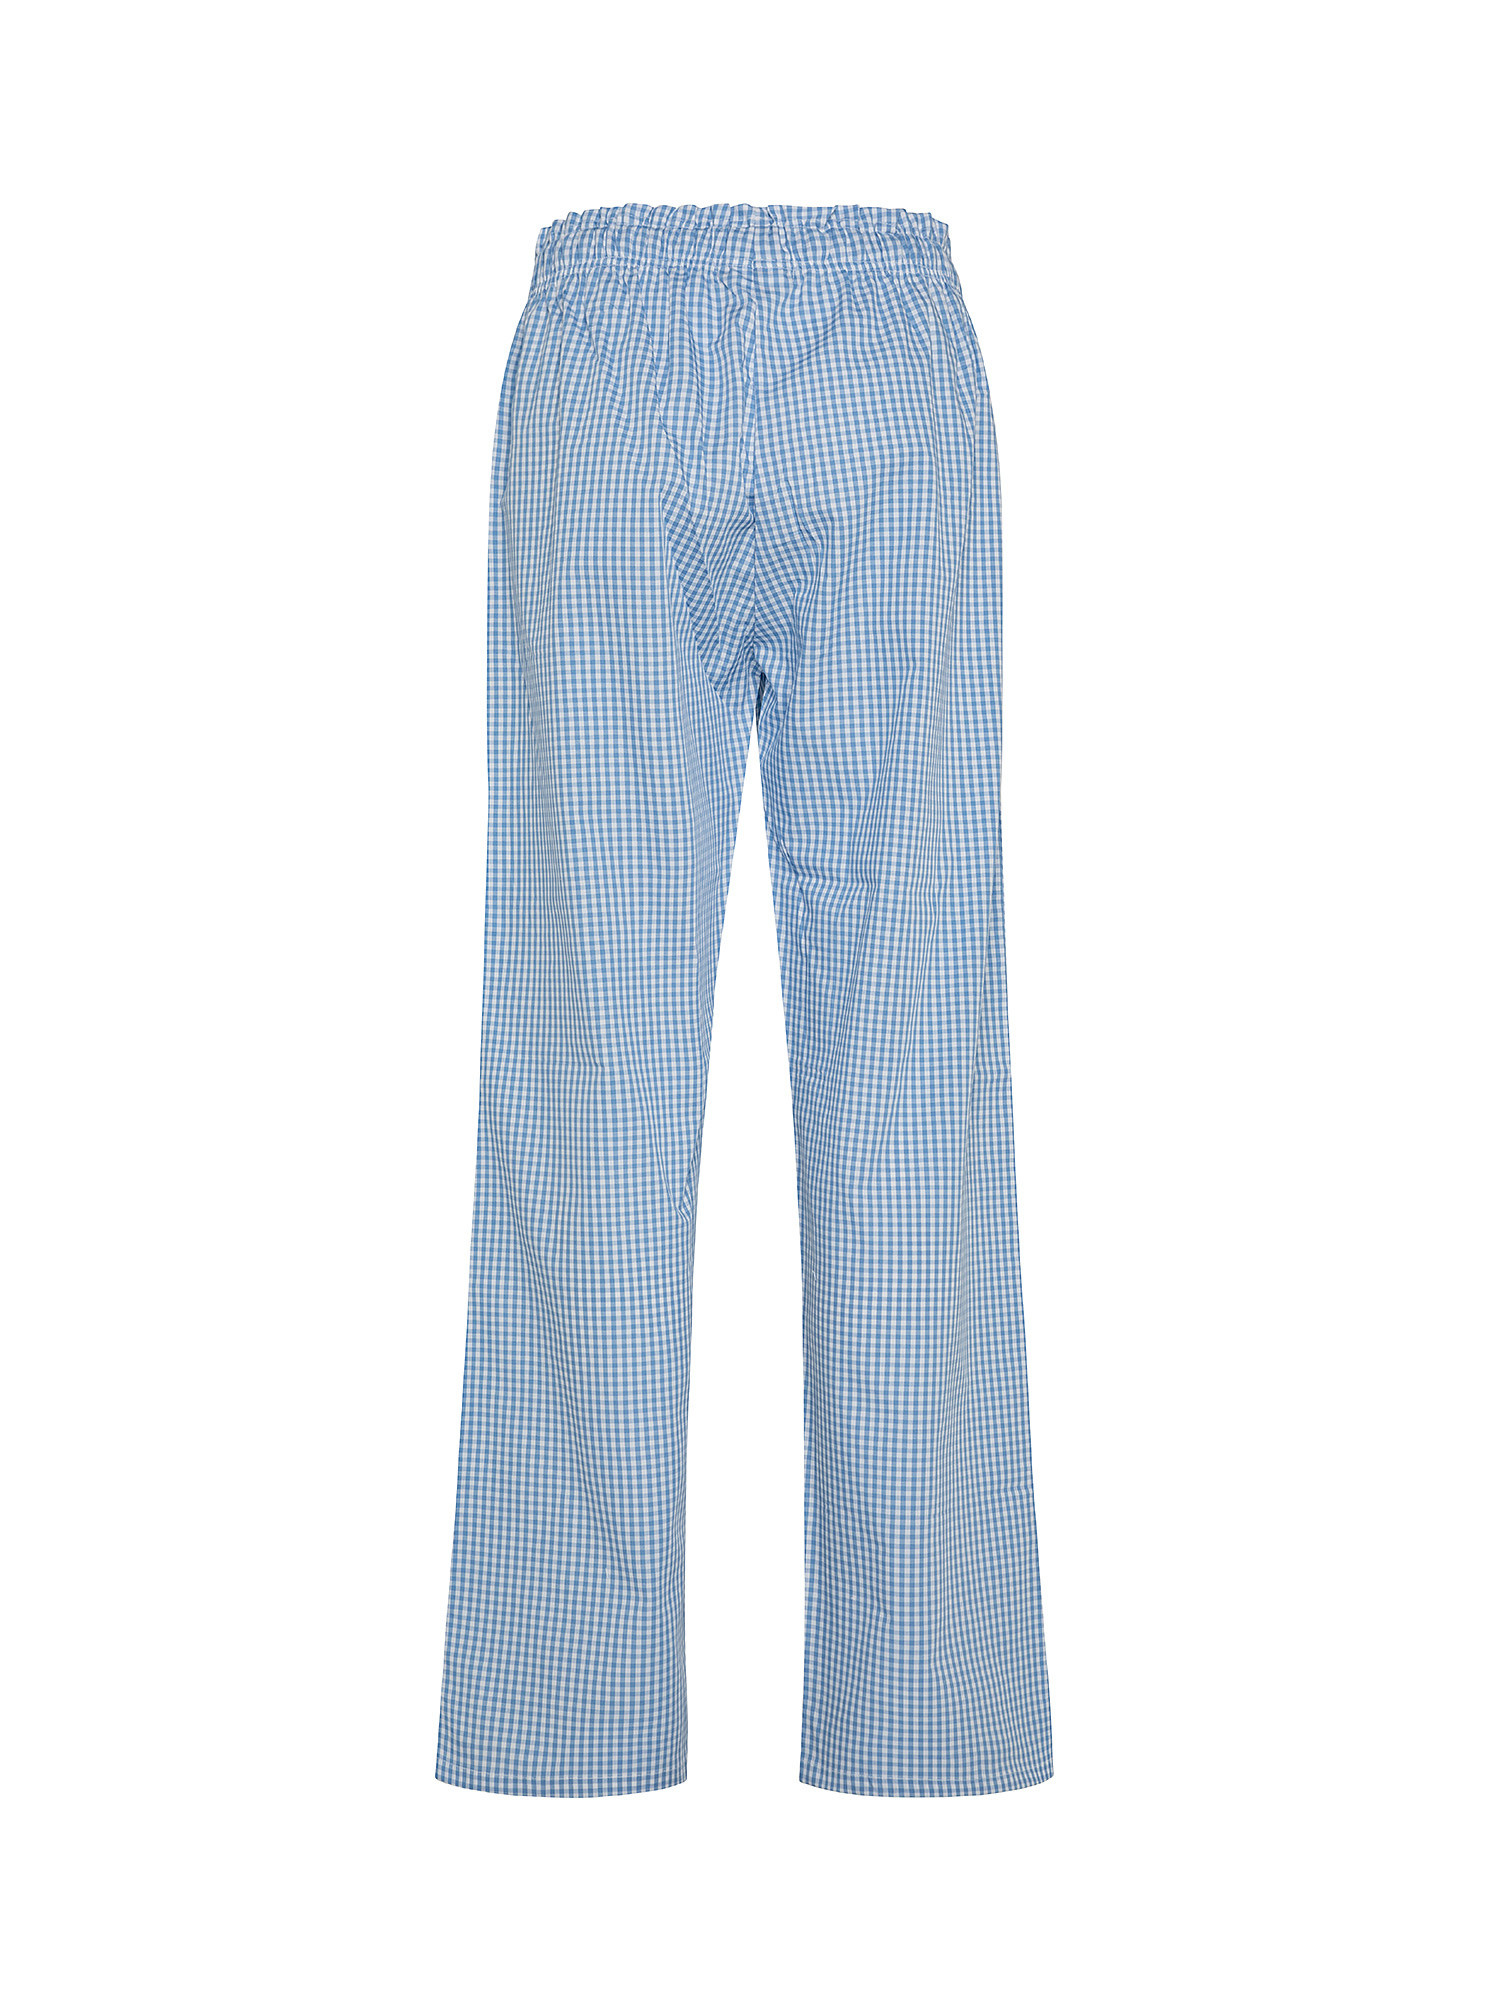 Pantaloni cotone tinto filo a quadretti, Azzurro, large